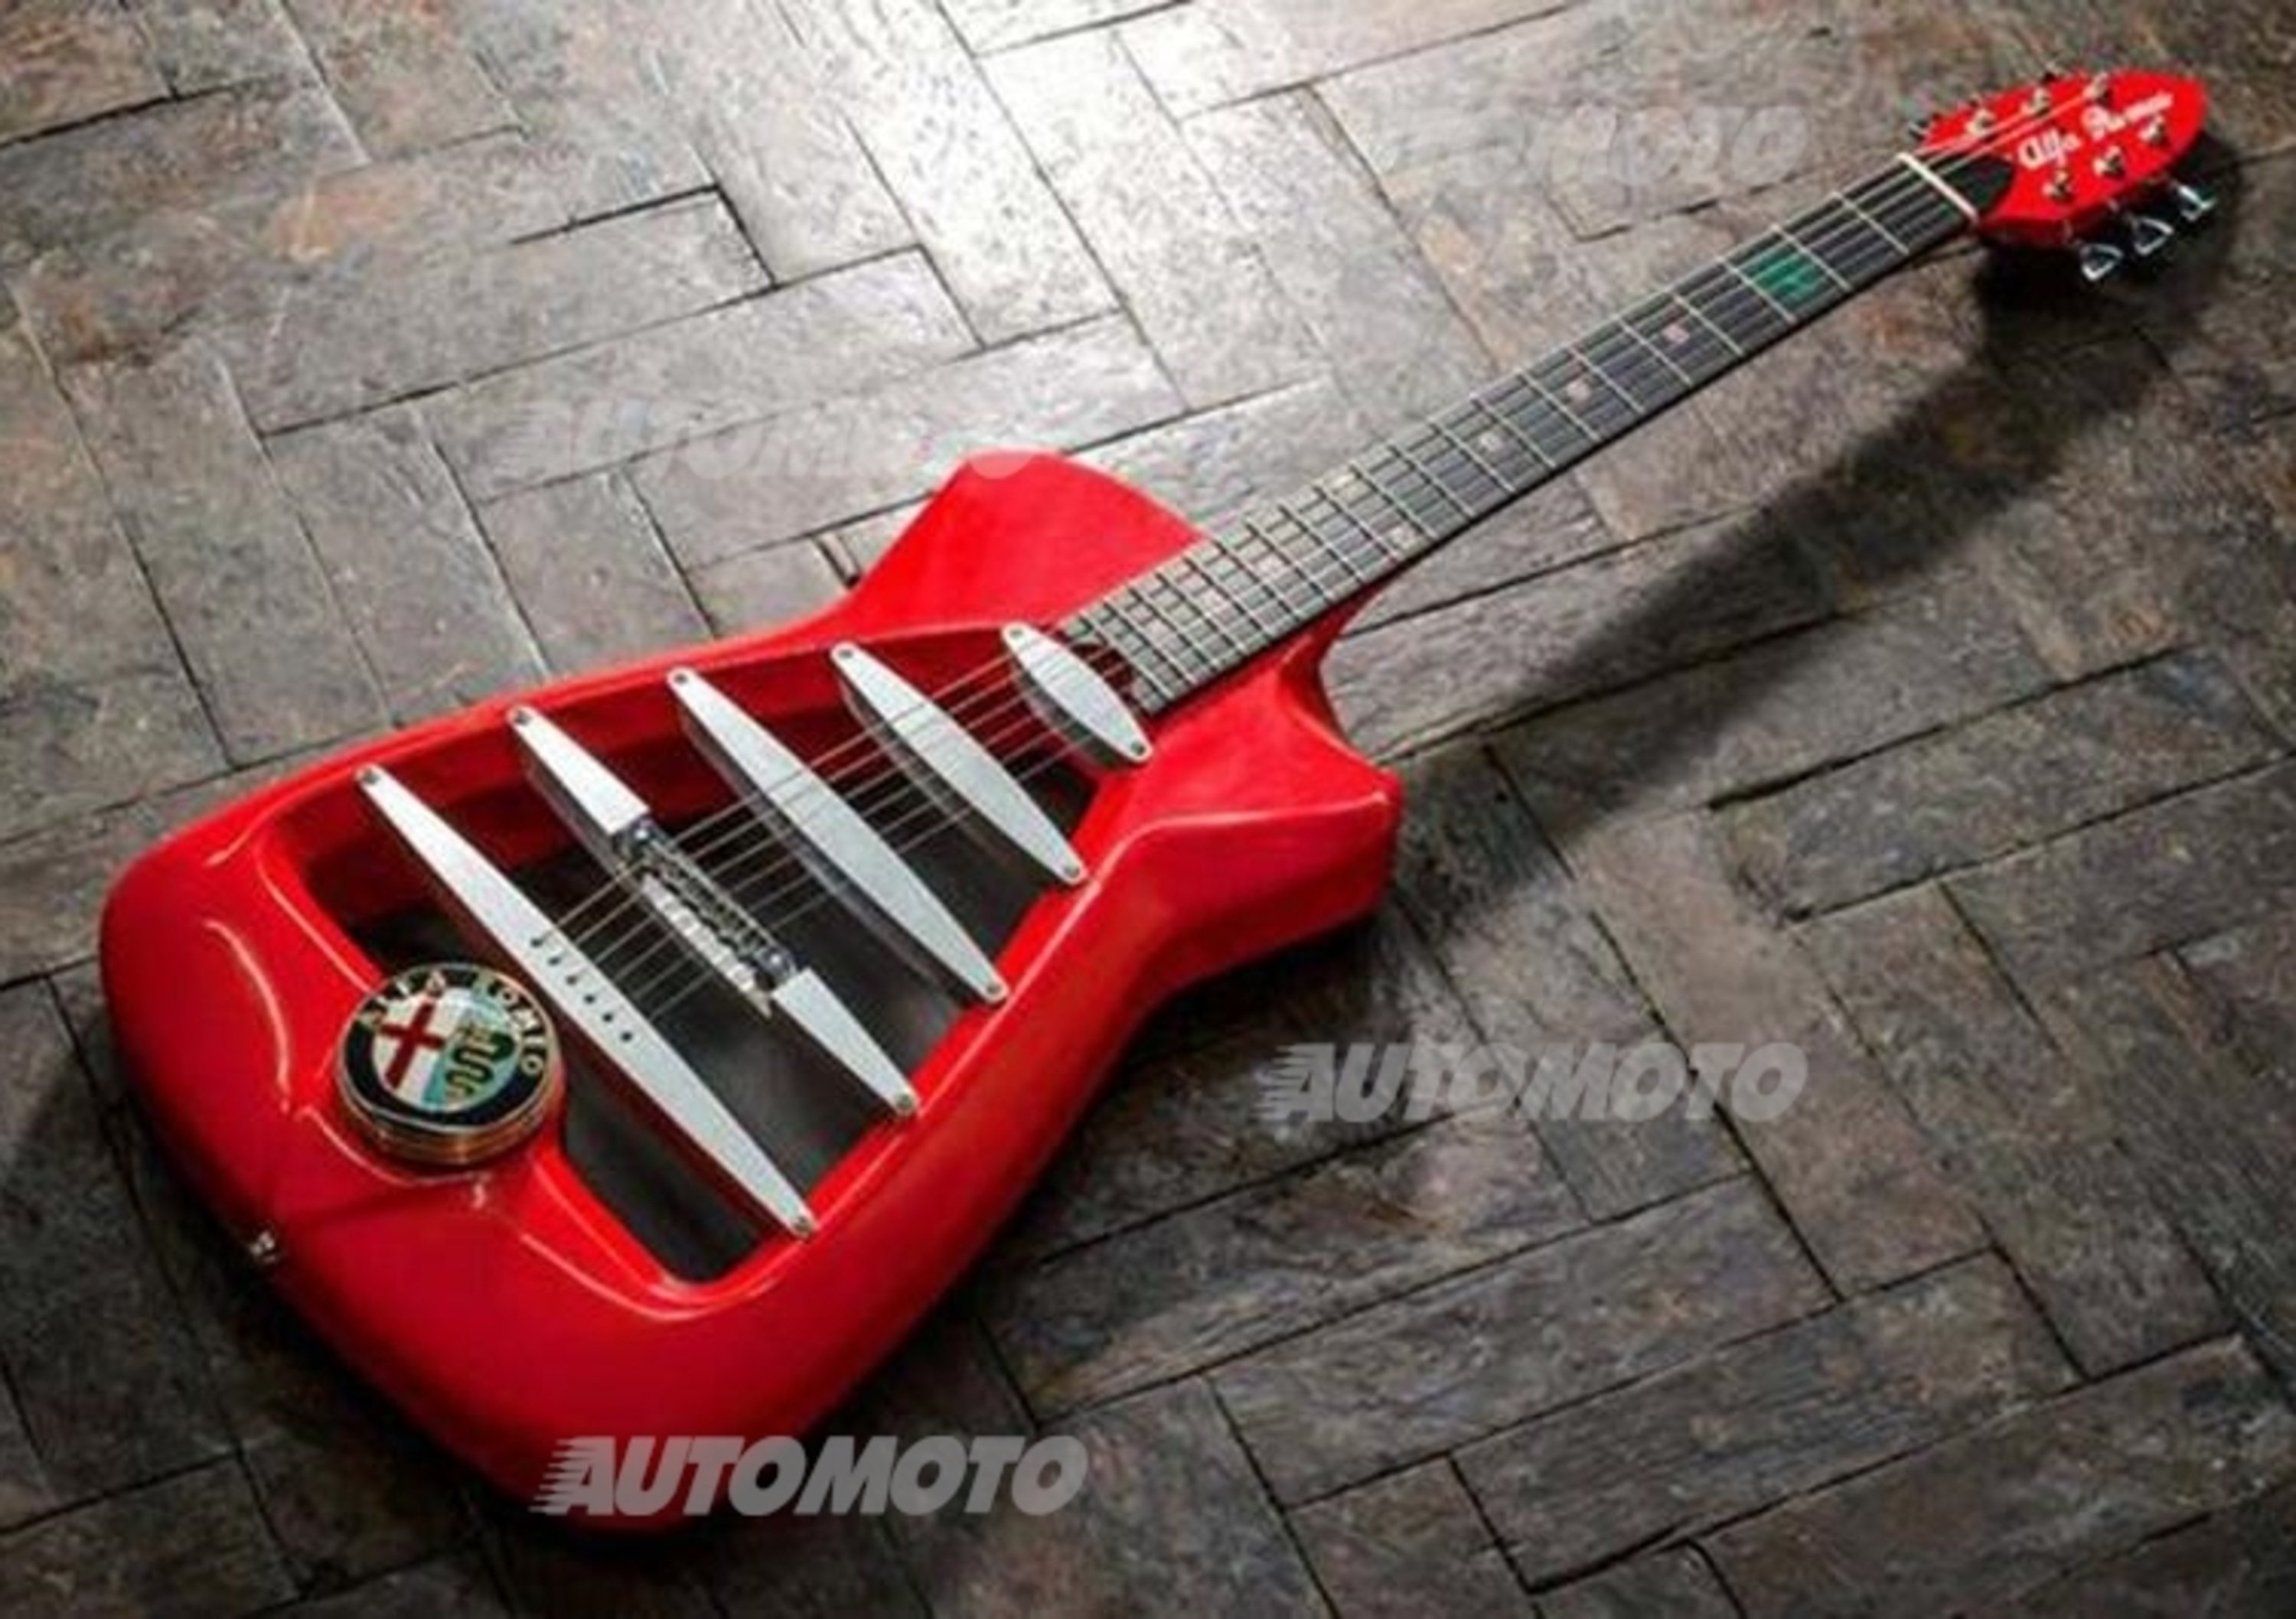 Alfa Romeo 4C: una chitarra elettrica ispirata alla sportiva di Arese